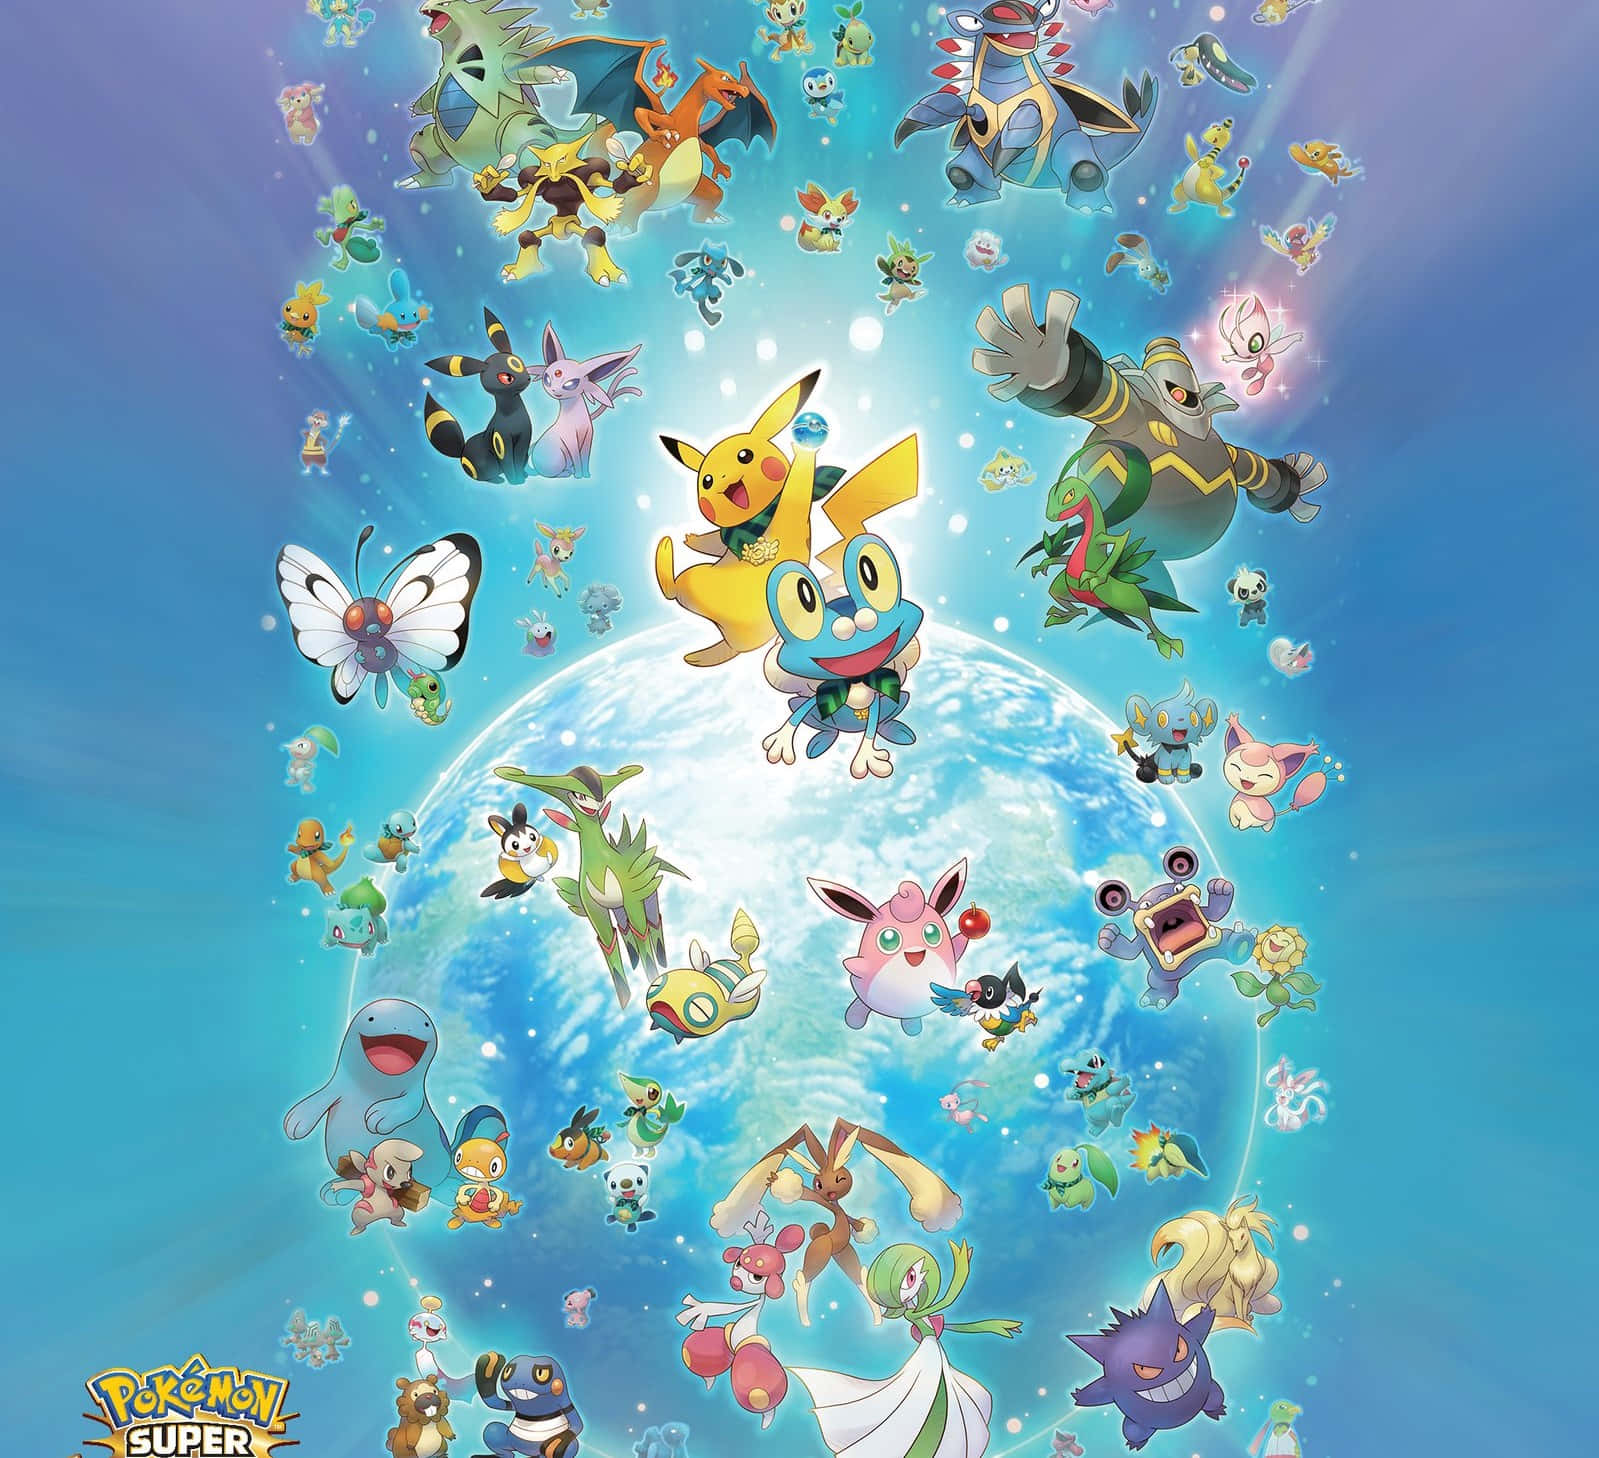 Gedig Ut På En Resa In I Den Virtuella Världen Av 3d-pokemon Go! Wallpaper